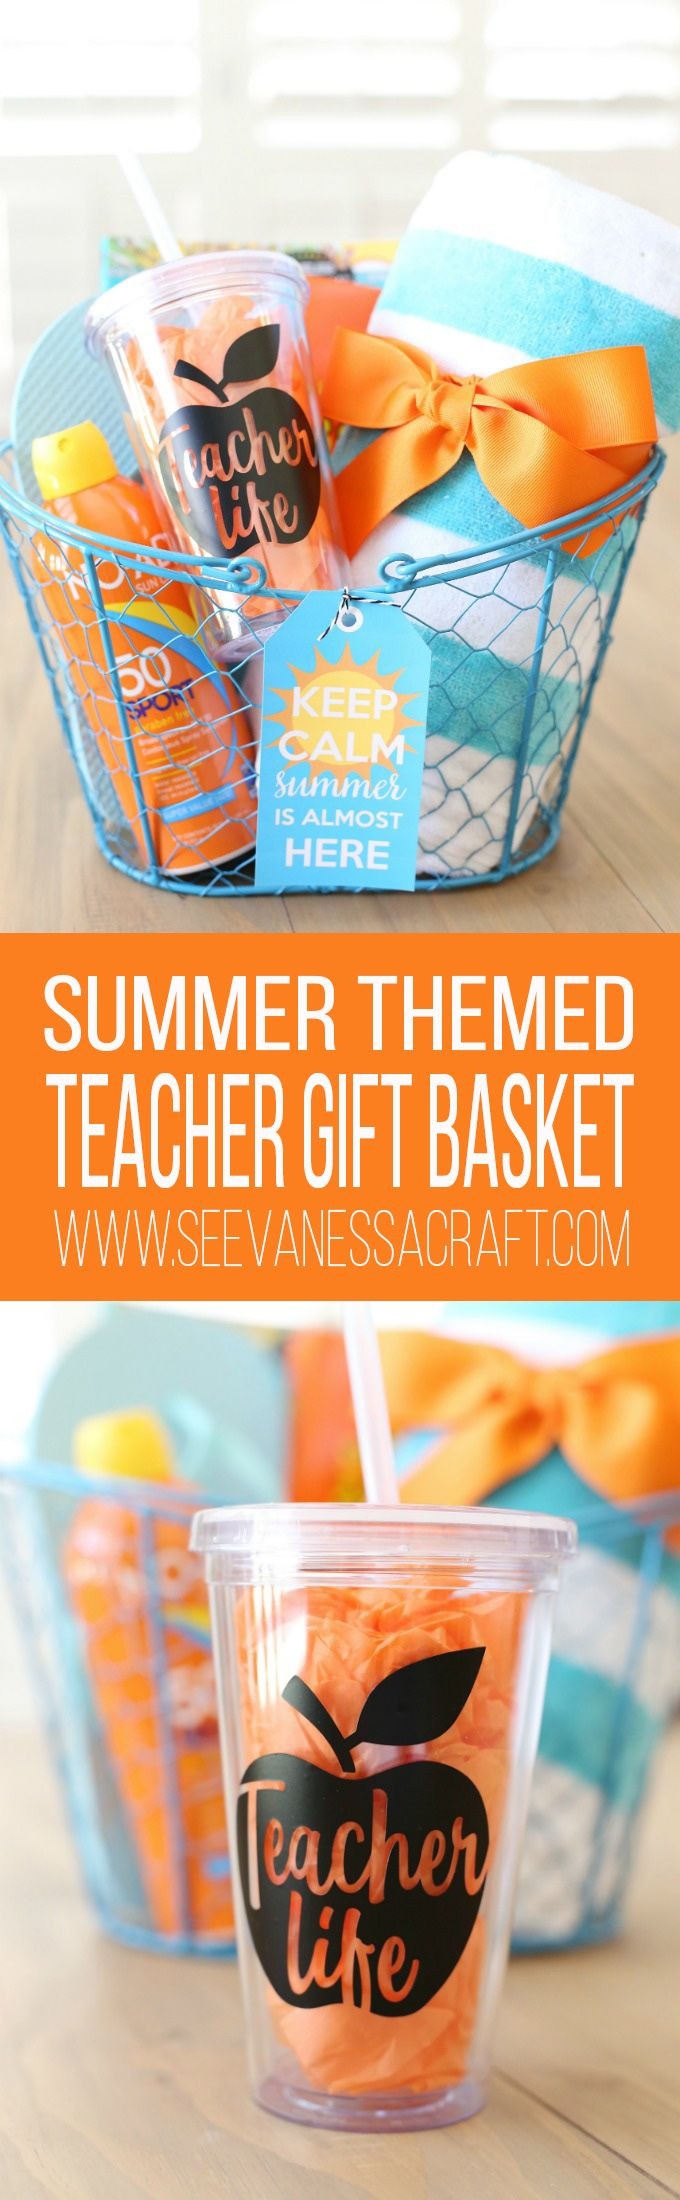 Summer Gift Basket Ideas For Teachers
 Craft Keep Calm Summer Teacher Gift Idea